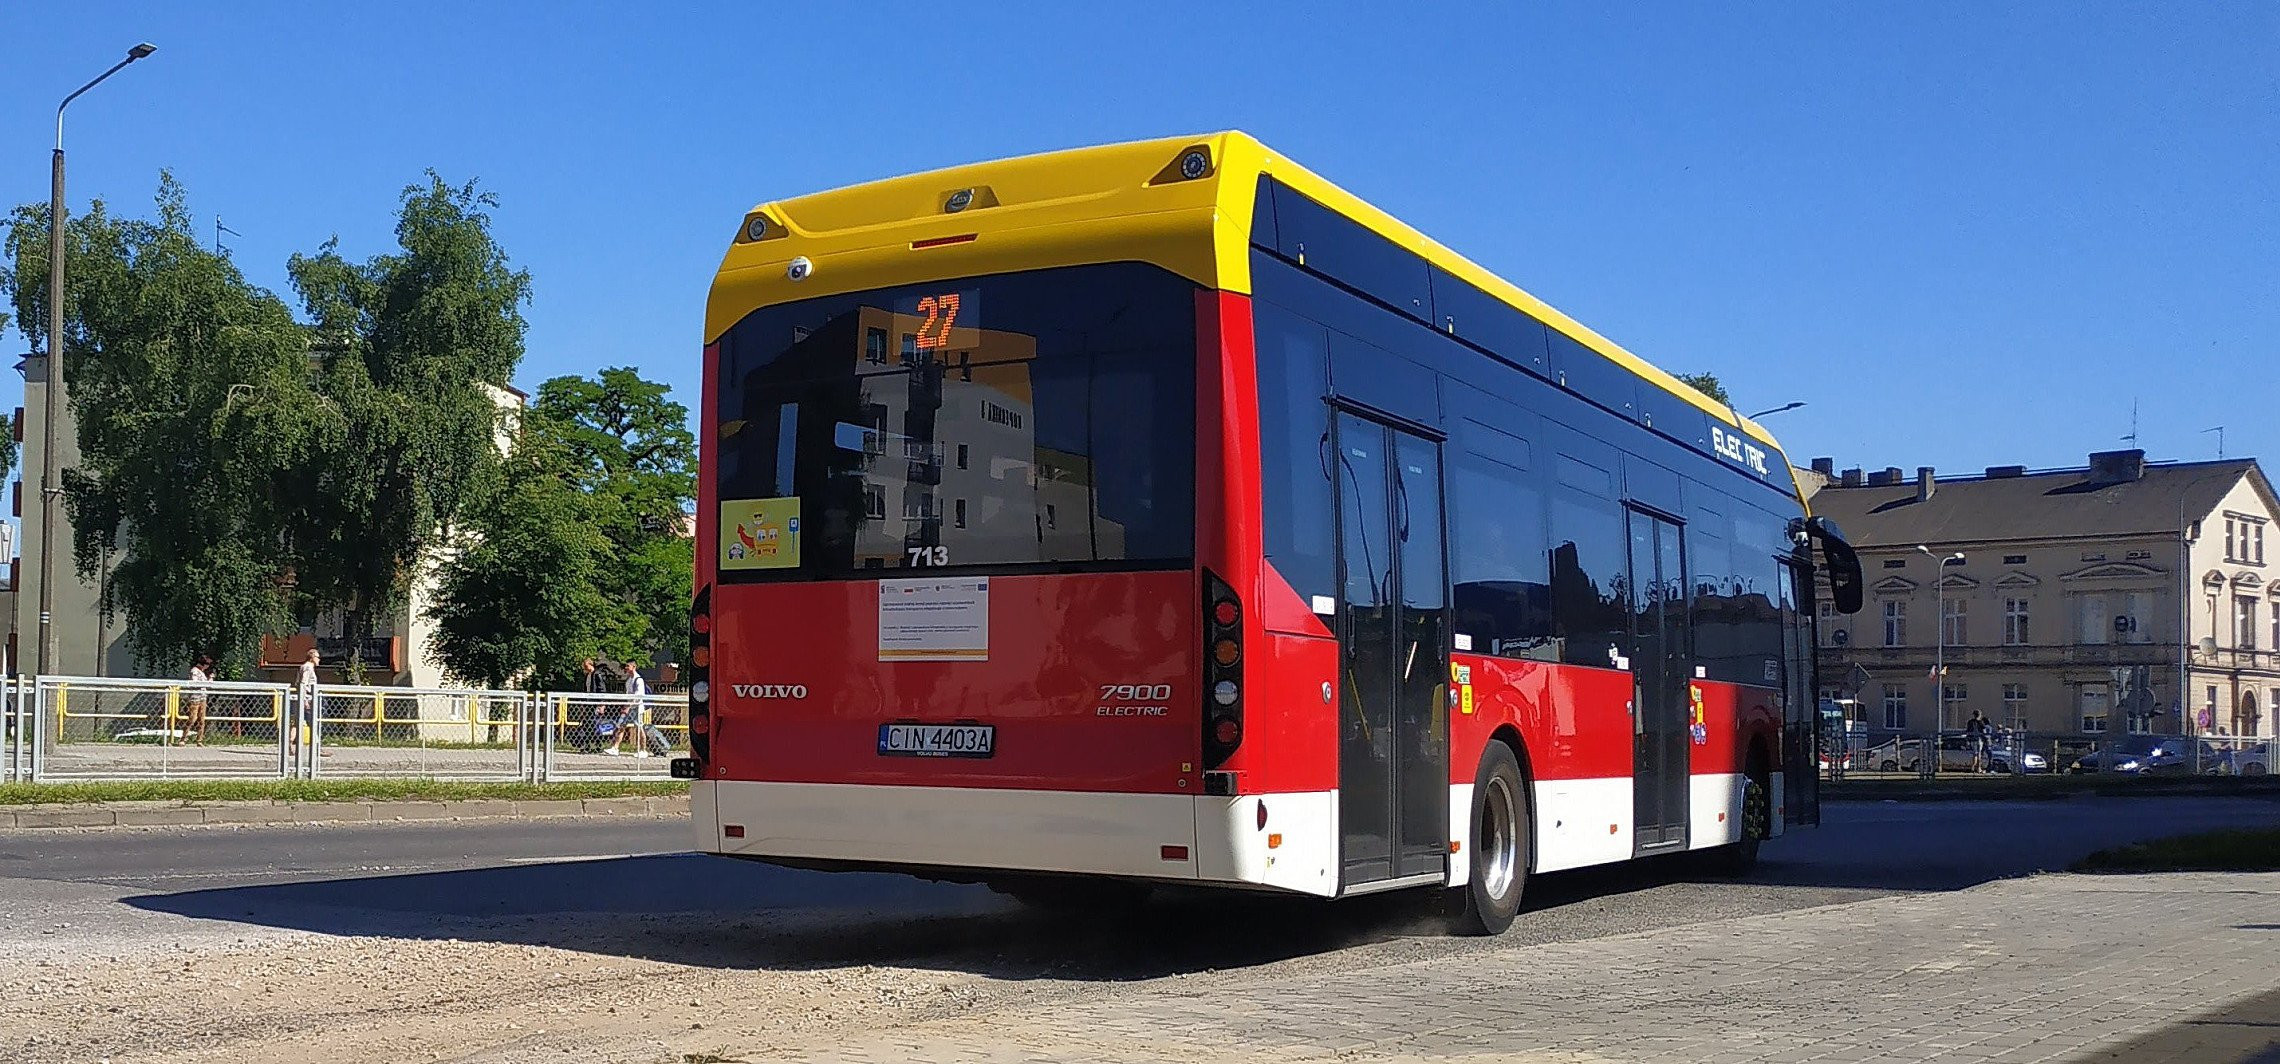 Inowrocław - Przez remont ulicy autobusy pojadą inaczej